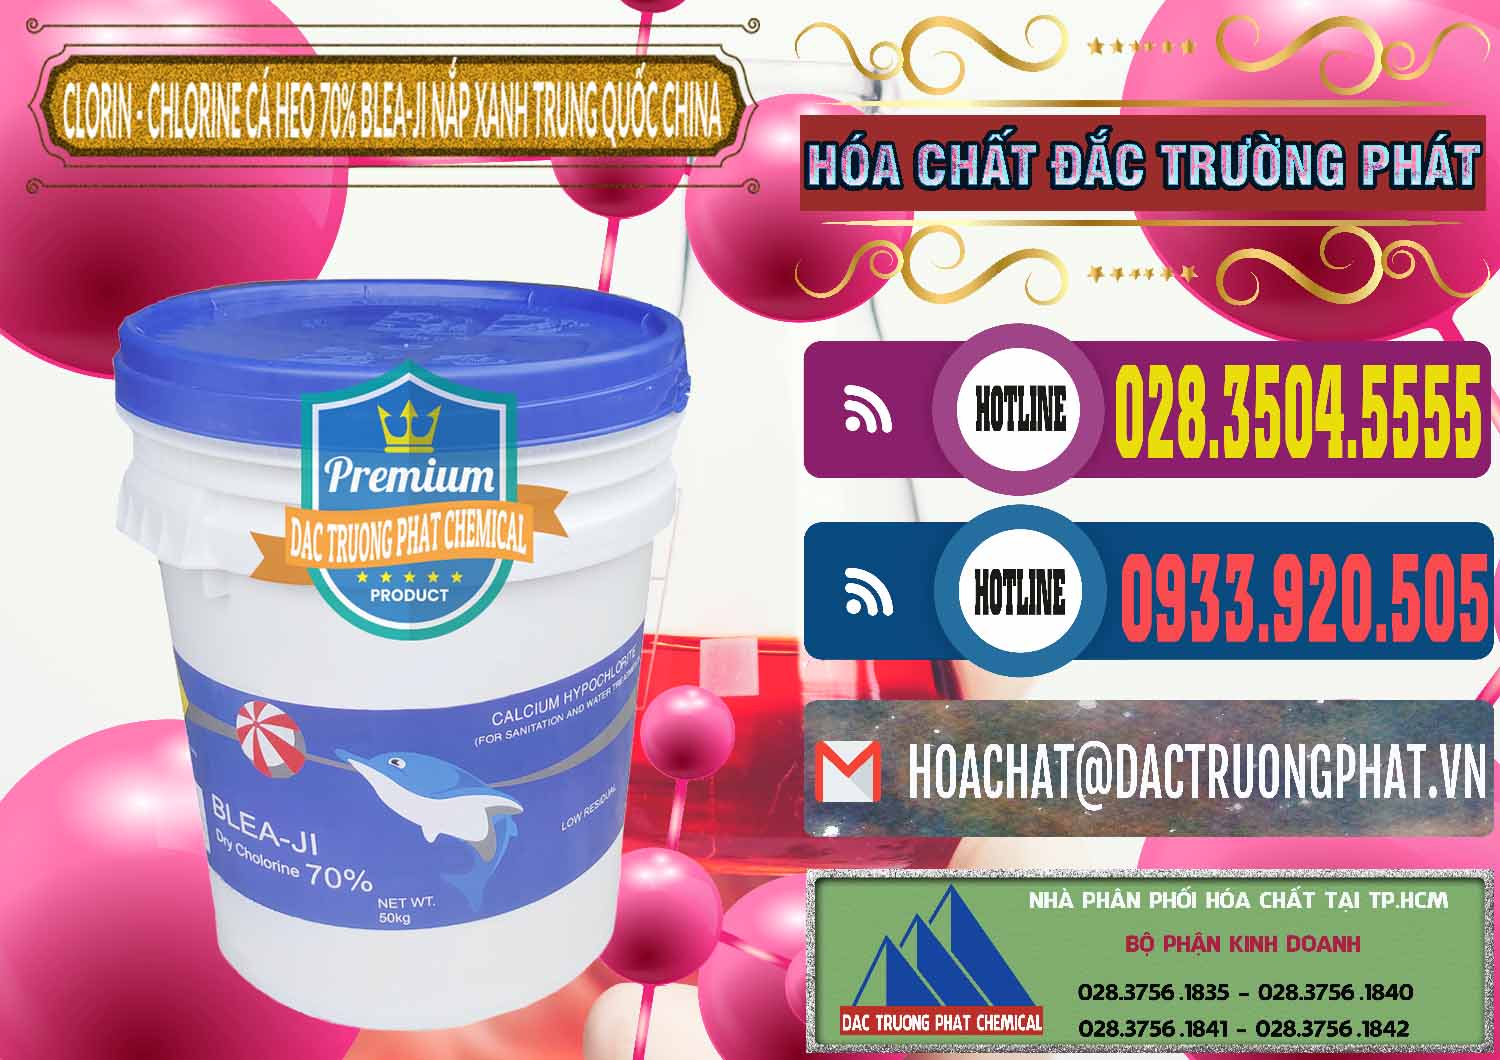 Công ty bán ( cung cấp ) Clorin - Chlorine Cá Heo 70% Cá Heo Blea-Ji Thùng Tròn Nắp Xanh Trung Quốc China - 0208 - Công ty phân phối _ nhập khẩu hóa chất tại TP.HCM - muabanhoachat.com.vn